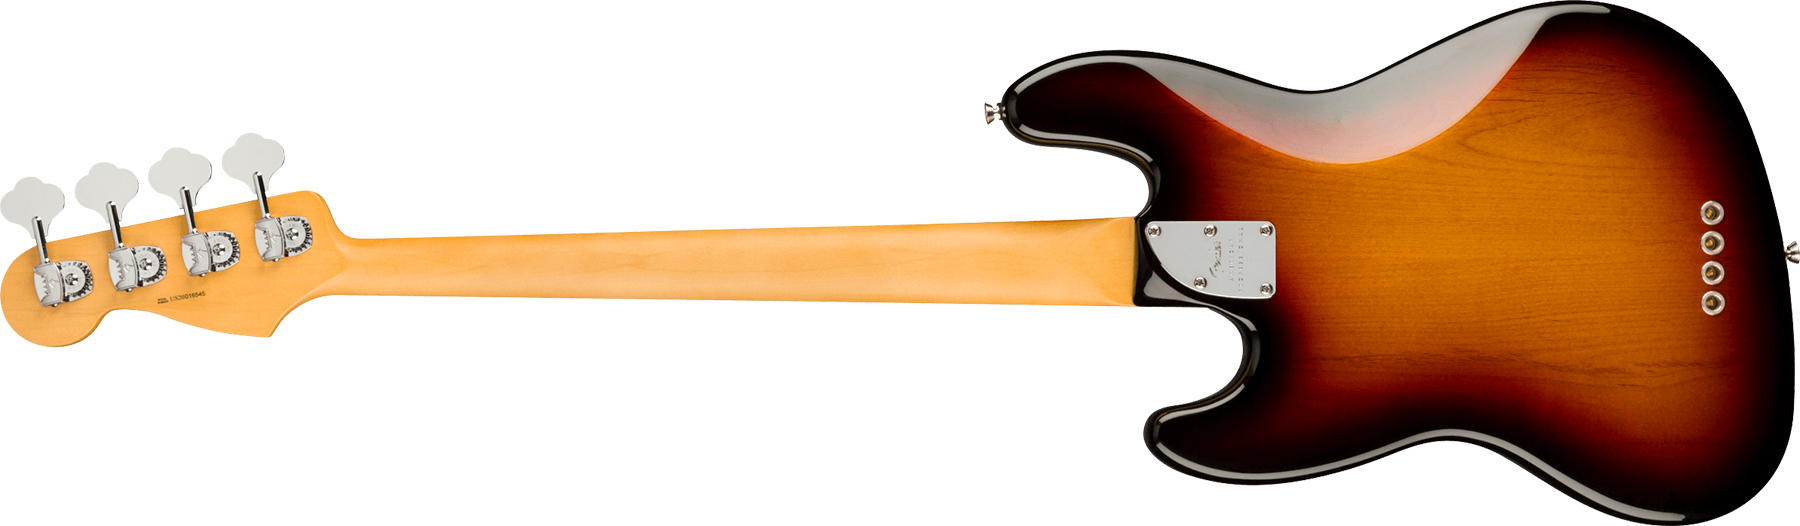 Fender Jazz Bass American Professional Ii Usa Mn - 3-color Sunburst - Bajo eléctrico de cuerpo sólido - Variation 1